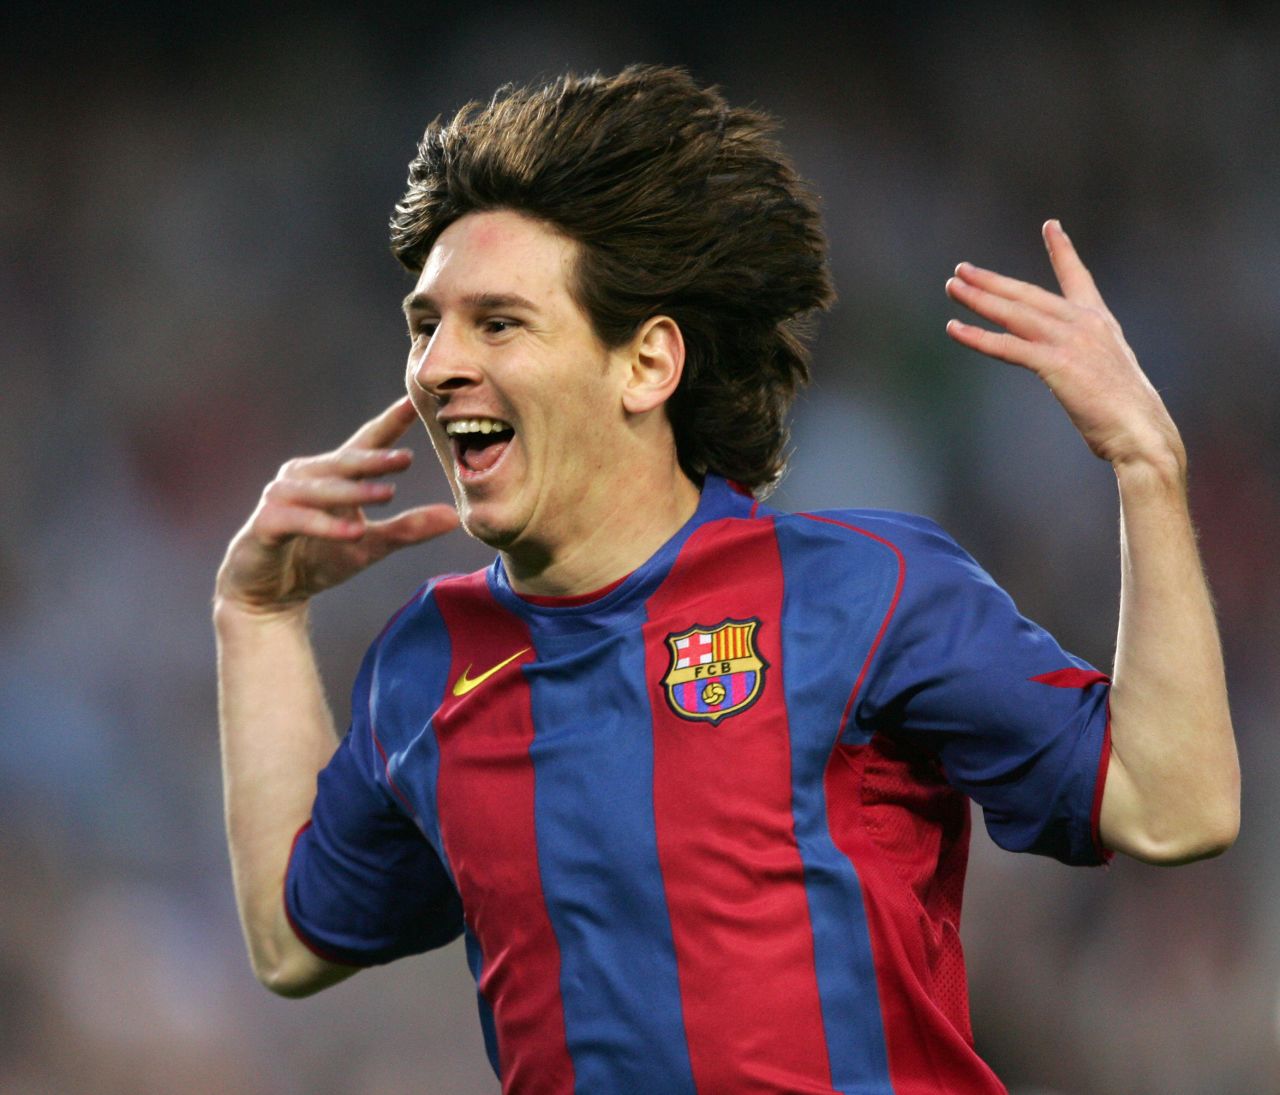 Hãy cùng xem lại những pha bóng đẹp mắt và kỳ cục của Lionel Messi trong hình ảnh này! Tập hợp những khoảnh khắc thăng hoa của các pha ghi bàn sẽ khiến bạn rung động và thích thú.